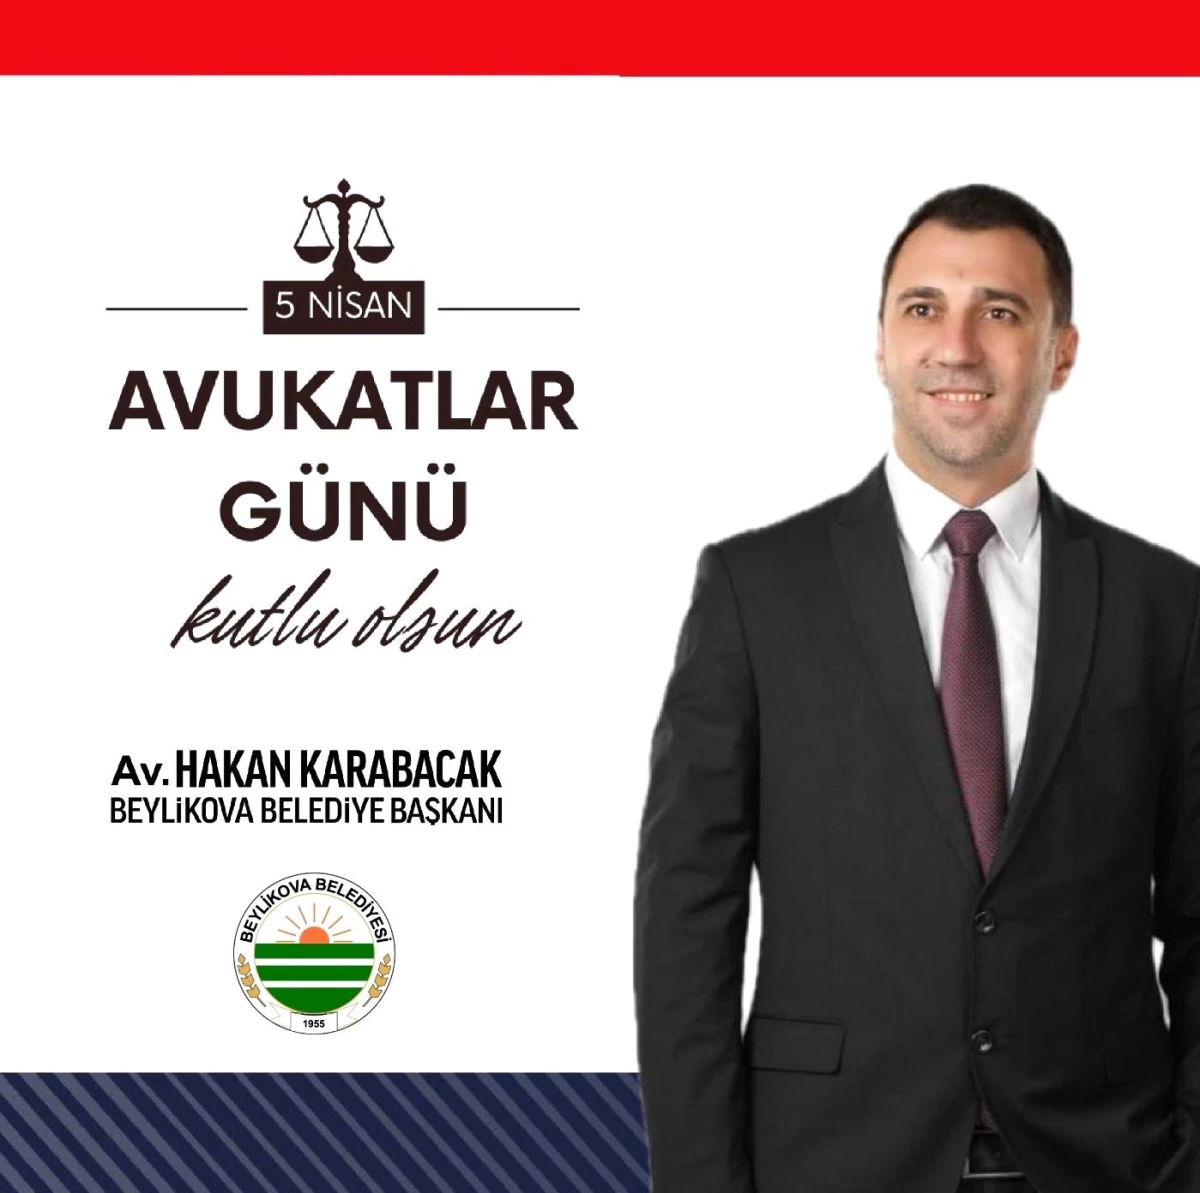 Av. Hakan Karabacak, Avukatlar Günü için özel mesaj yayımladı